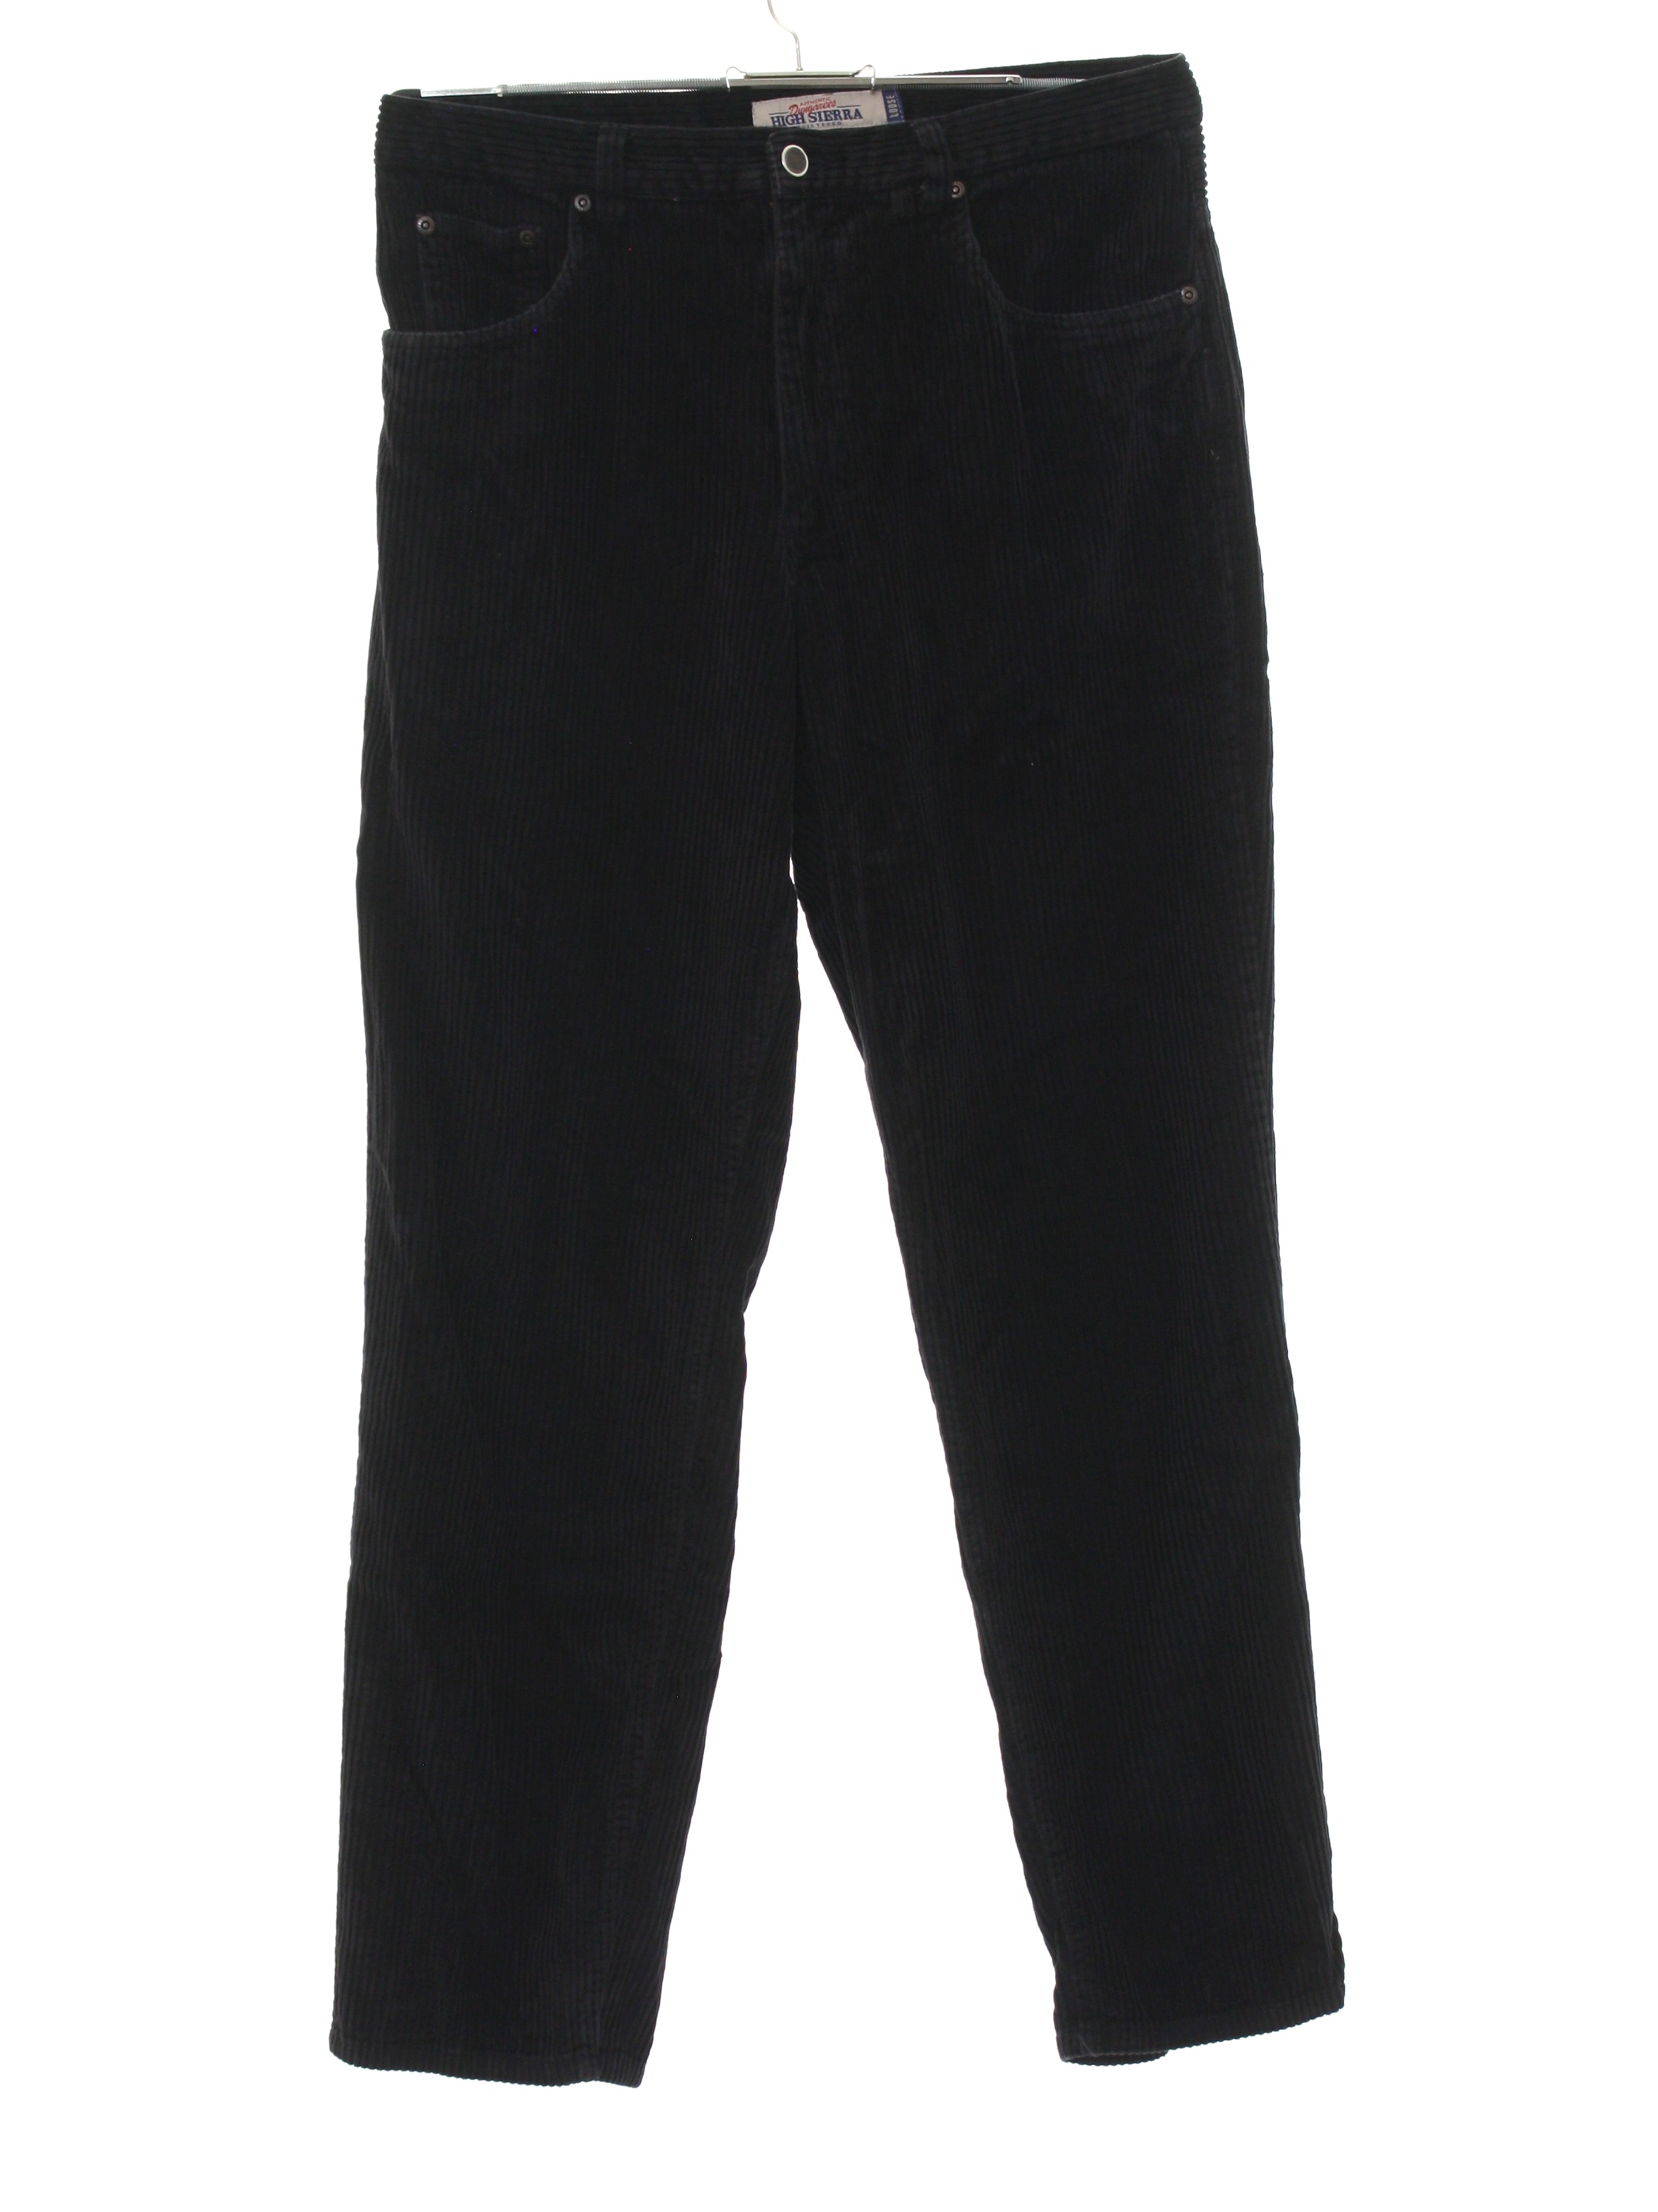 Vintage High Sierra 90's Pants: 90s -High Sierra- Mens black solid ...